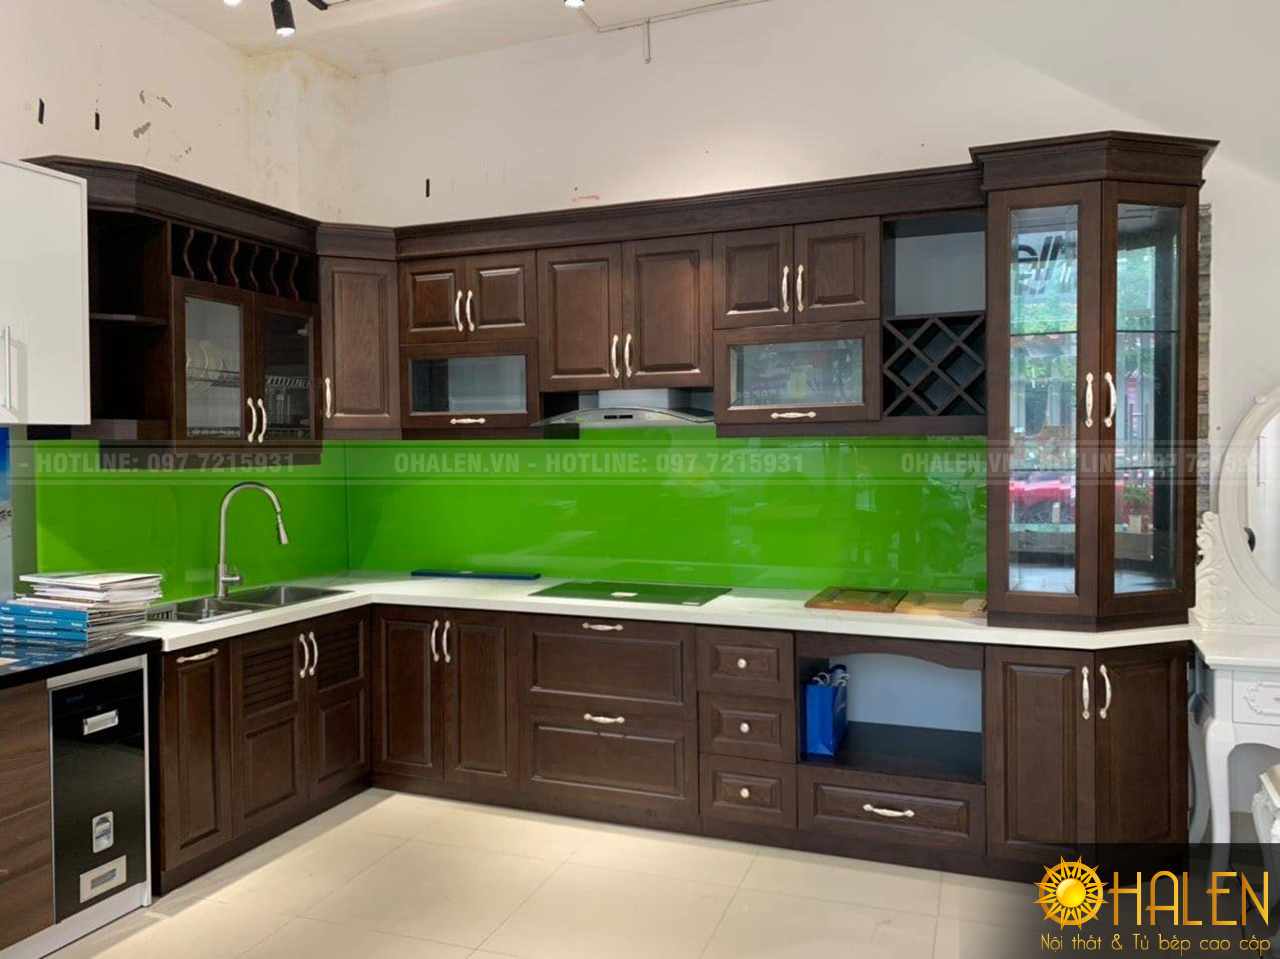 Mẫu tủ bếp gia đình đẹp màu nâu với điểm nhấn là kính màu xanh lá hợp với người mệnh Mộc